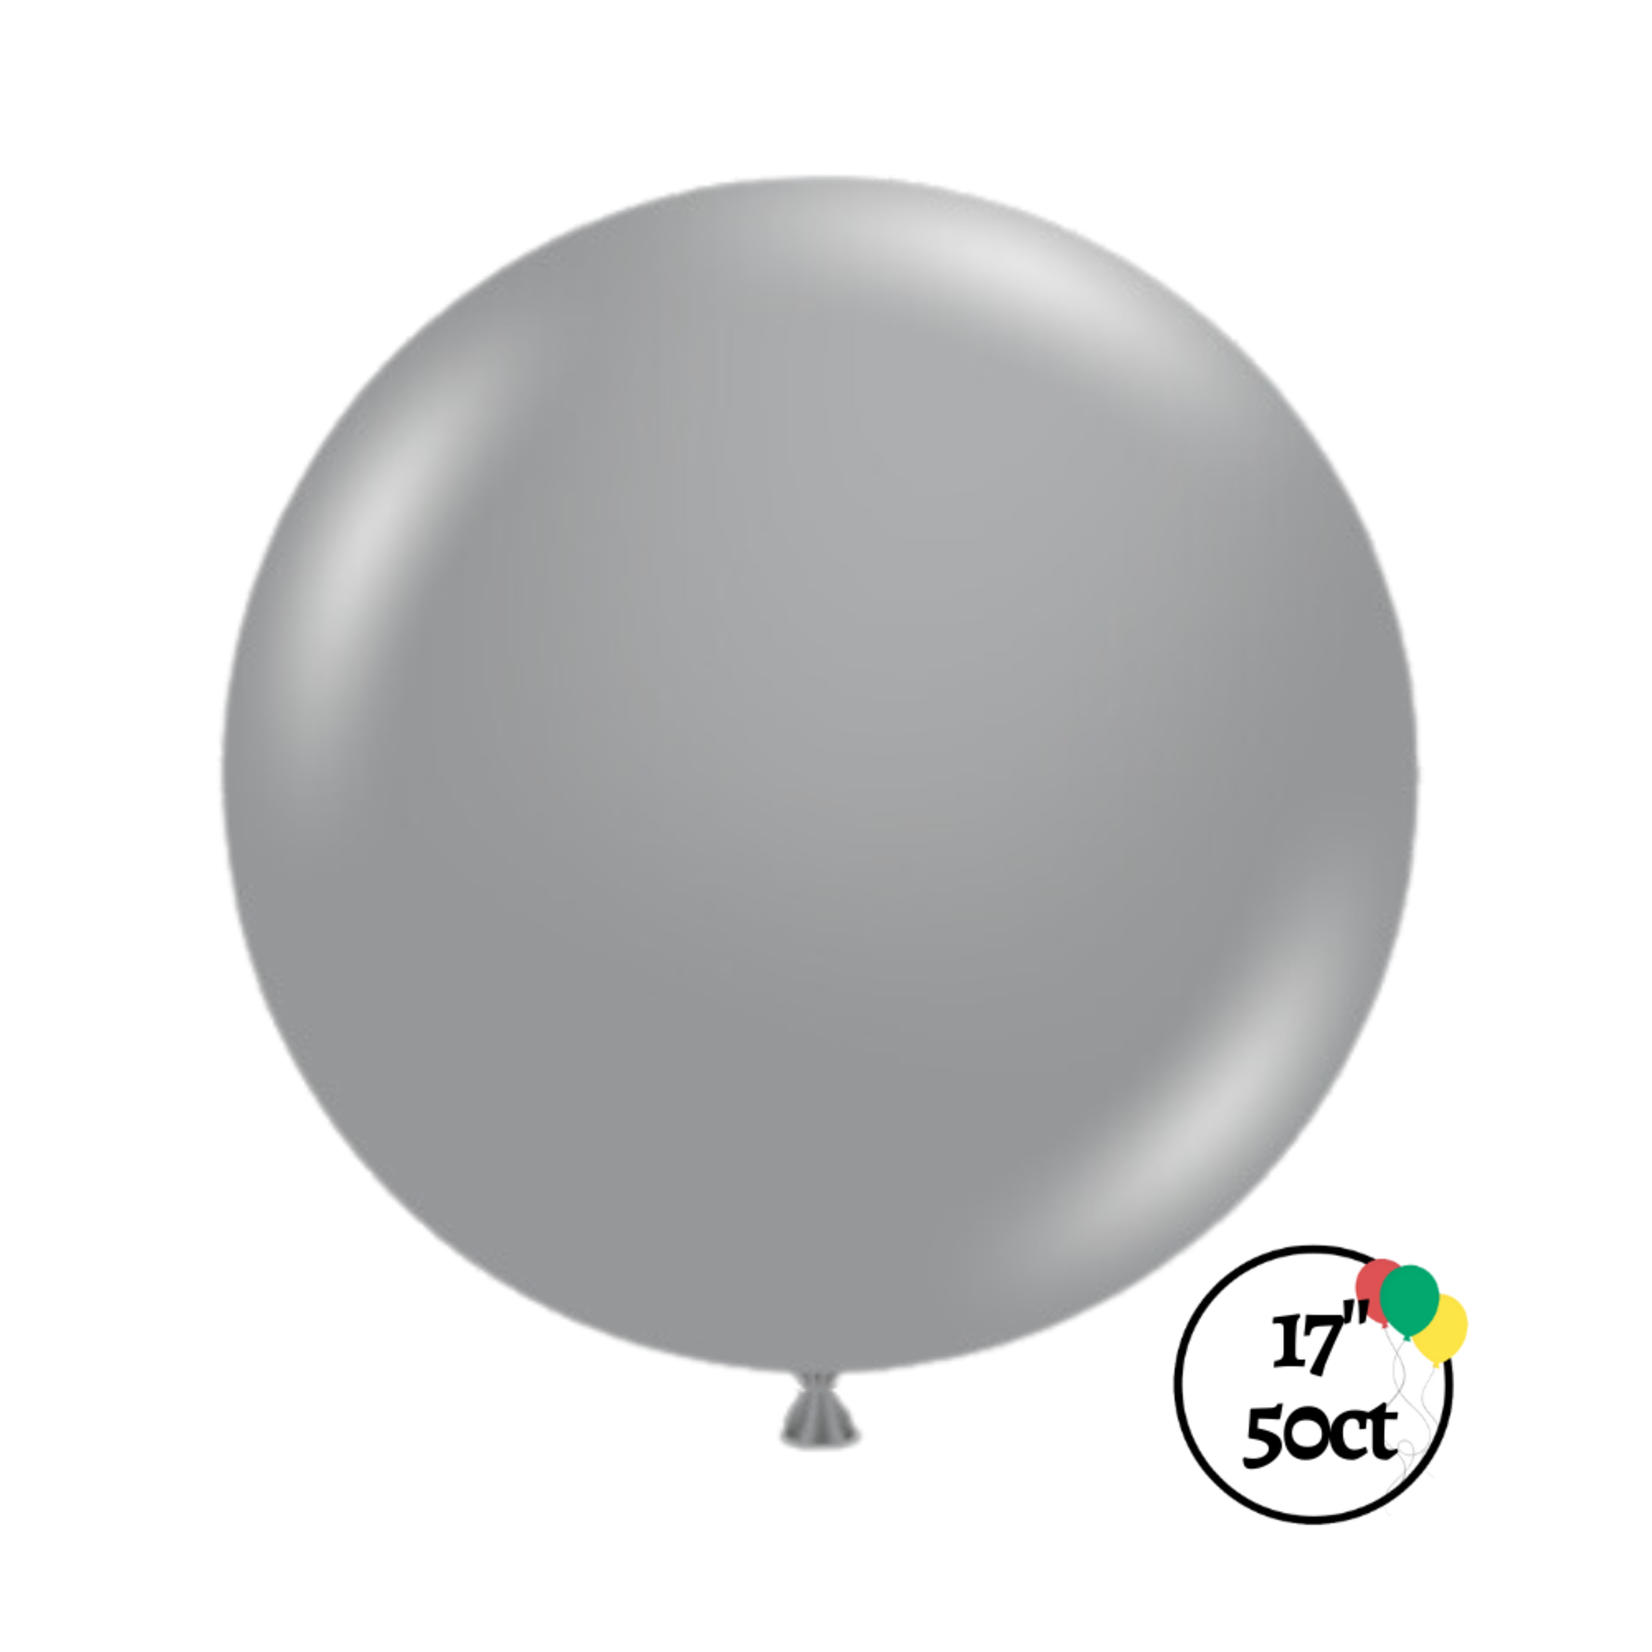 Tuftex 17" Tuftex Silver 50ct Balloon